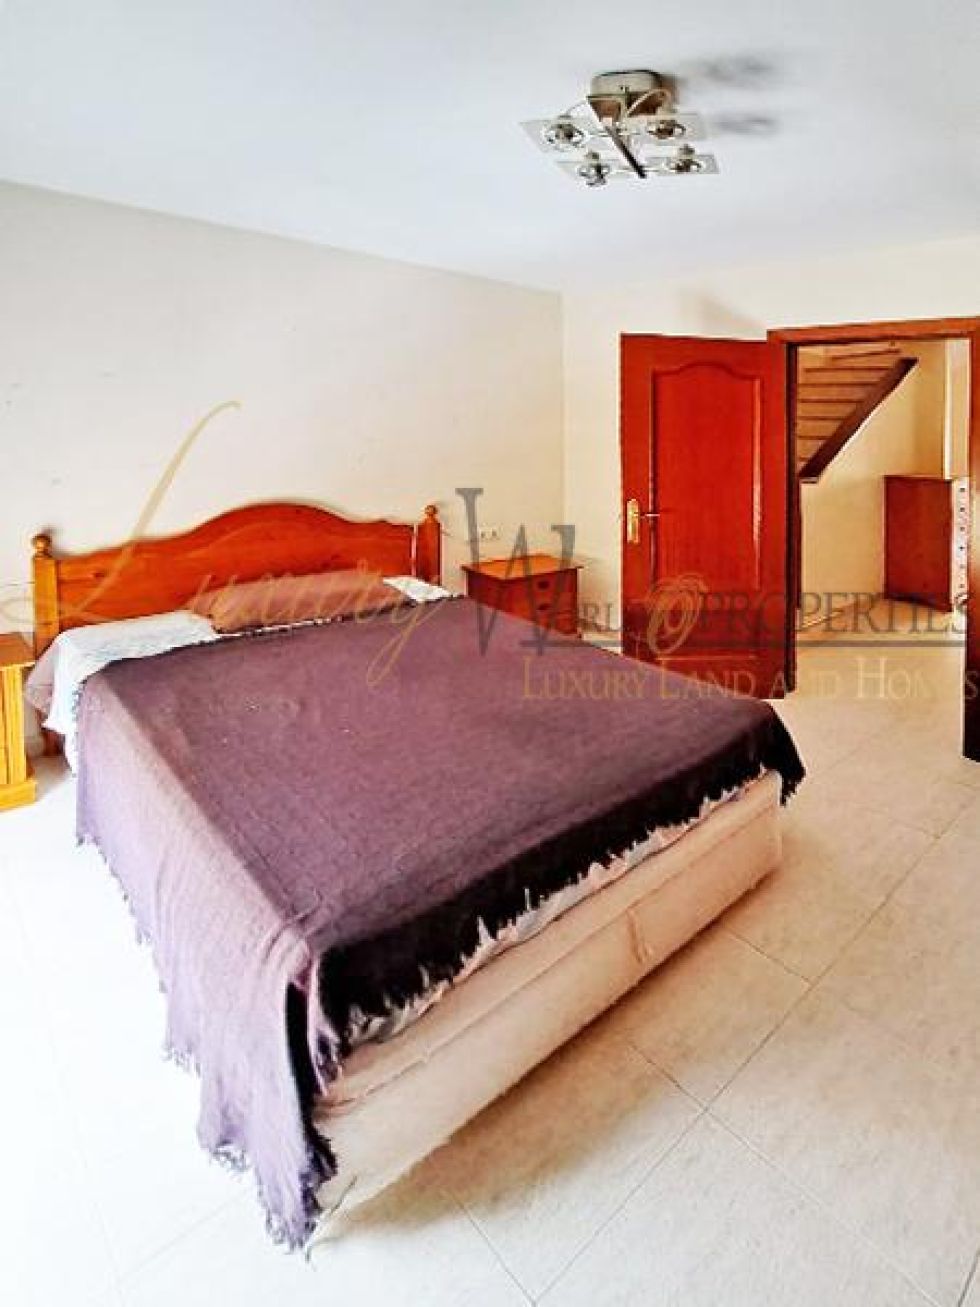 Villa for sale in  Aldea Blanca, Spain - LWP4304 Casa en Llano del Camello